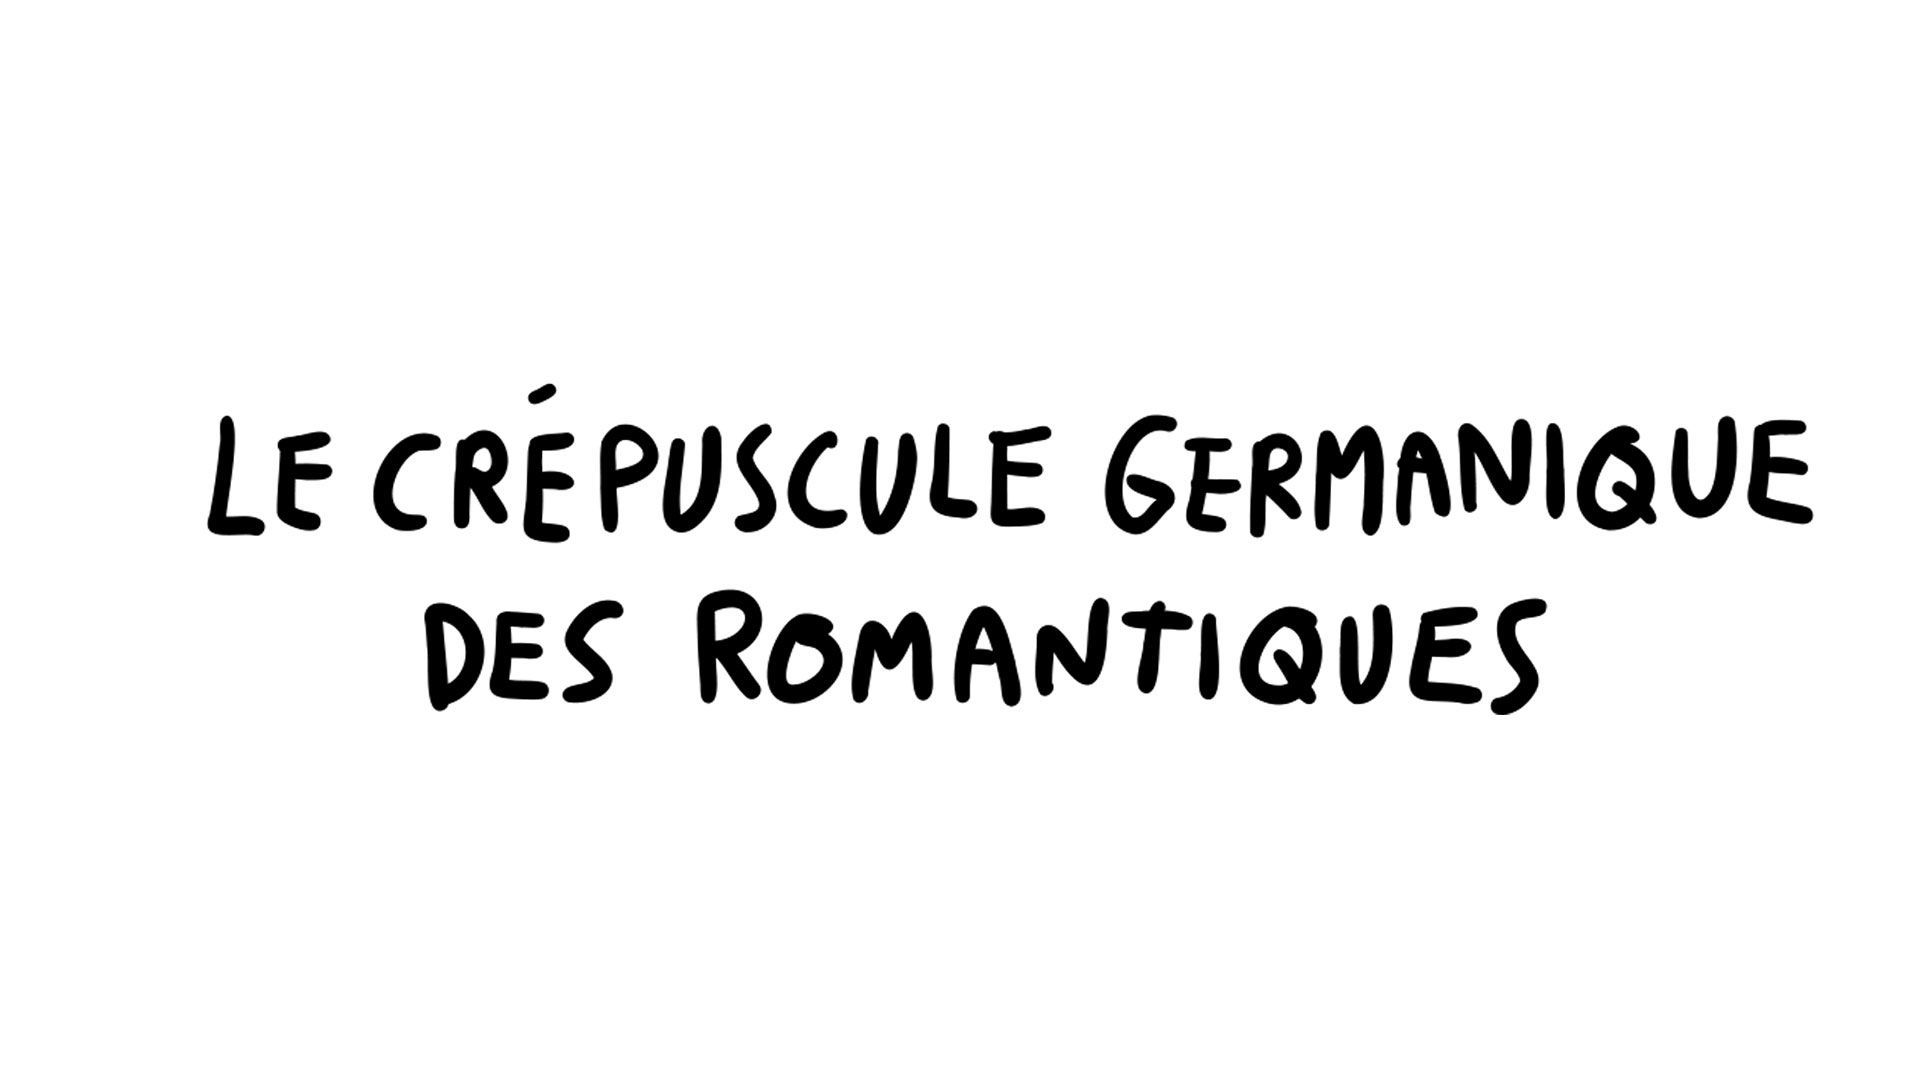 Je Sais Pas Vous : Le crépuscule germanique des romantiques